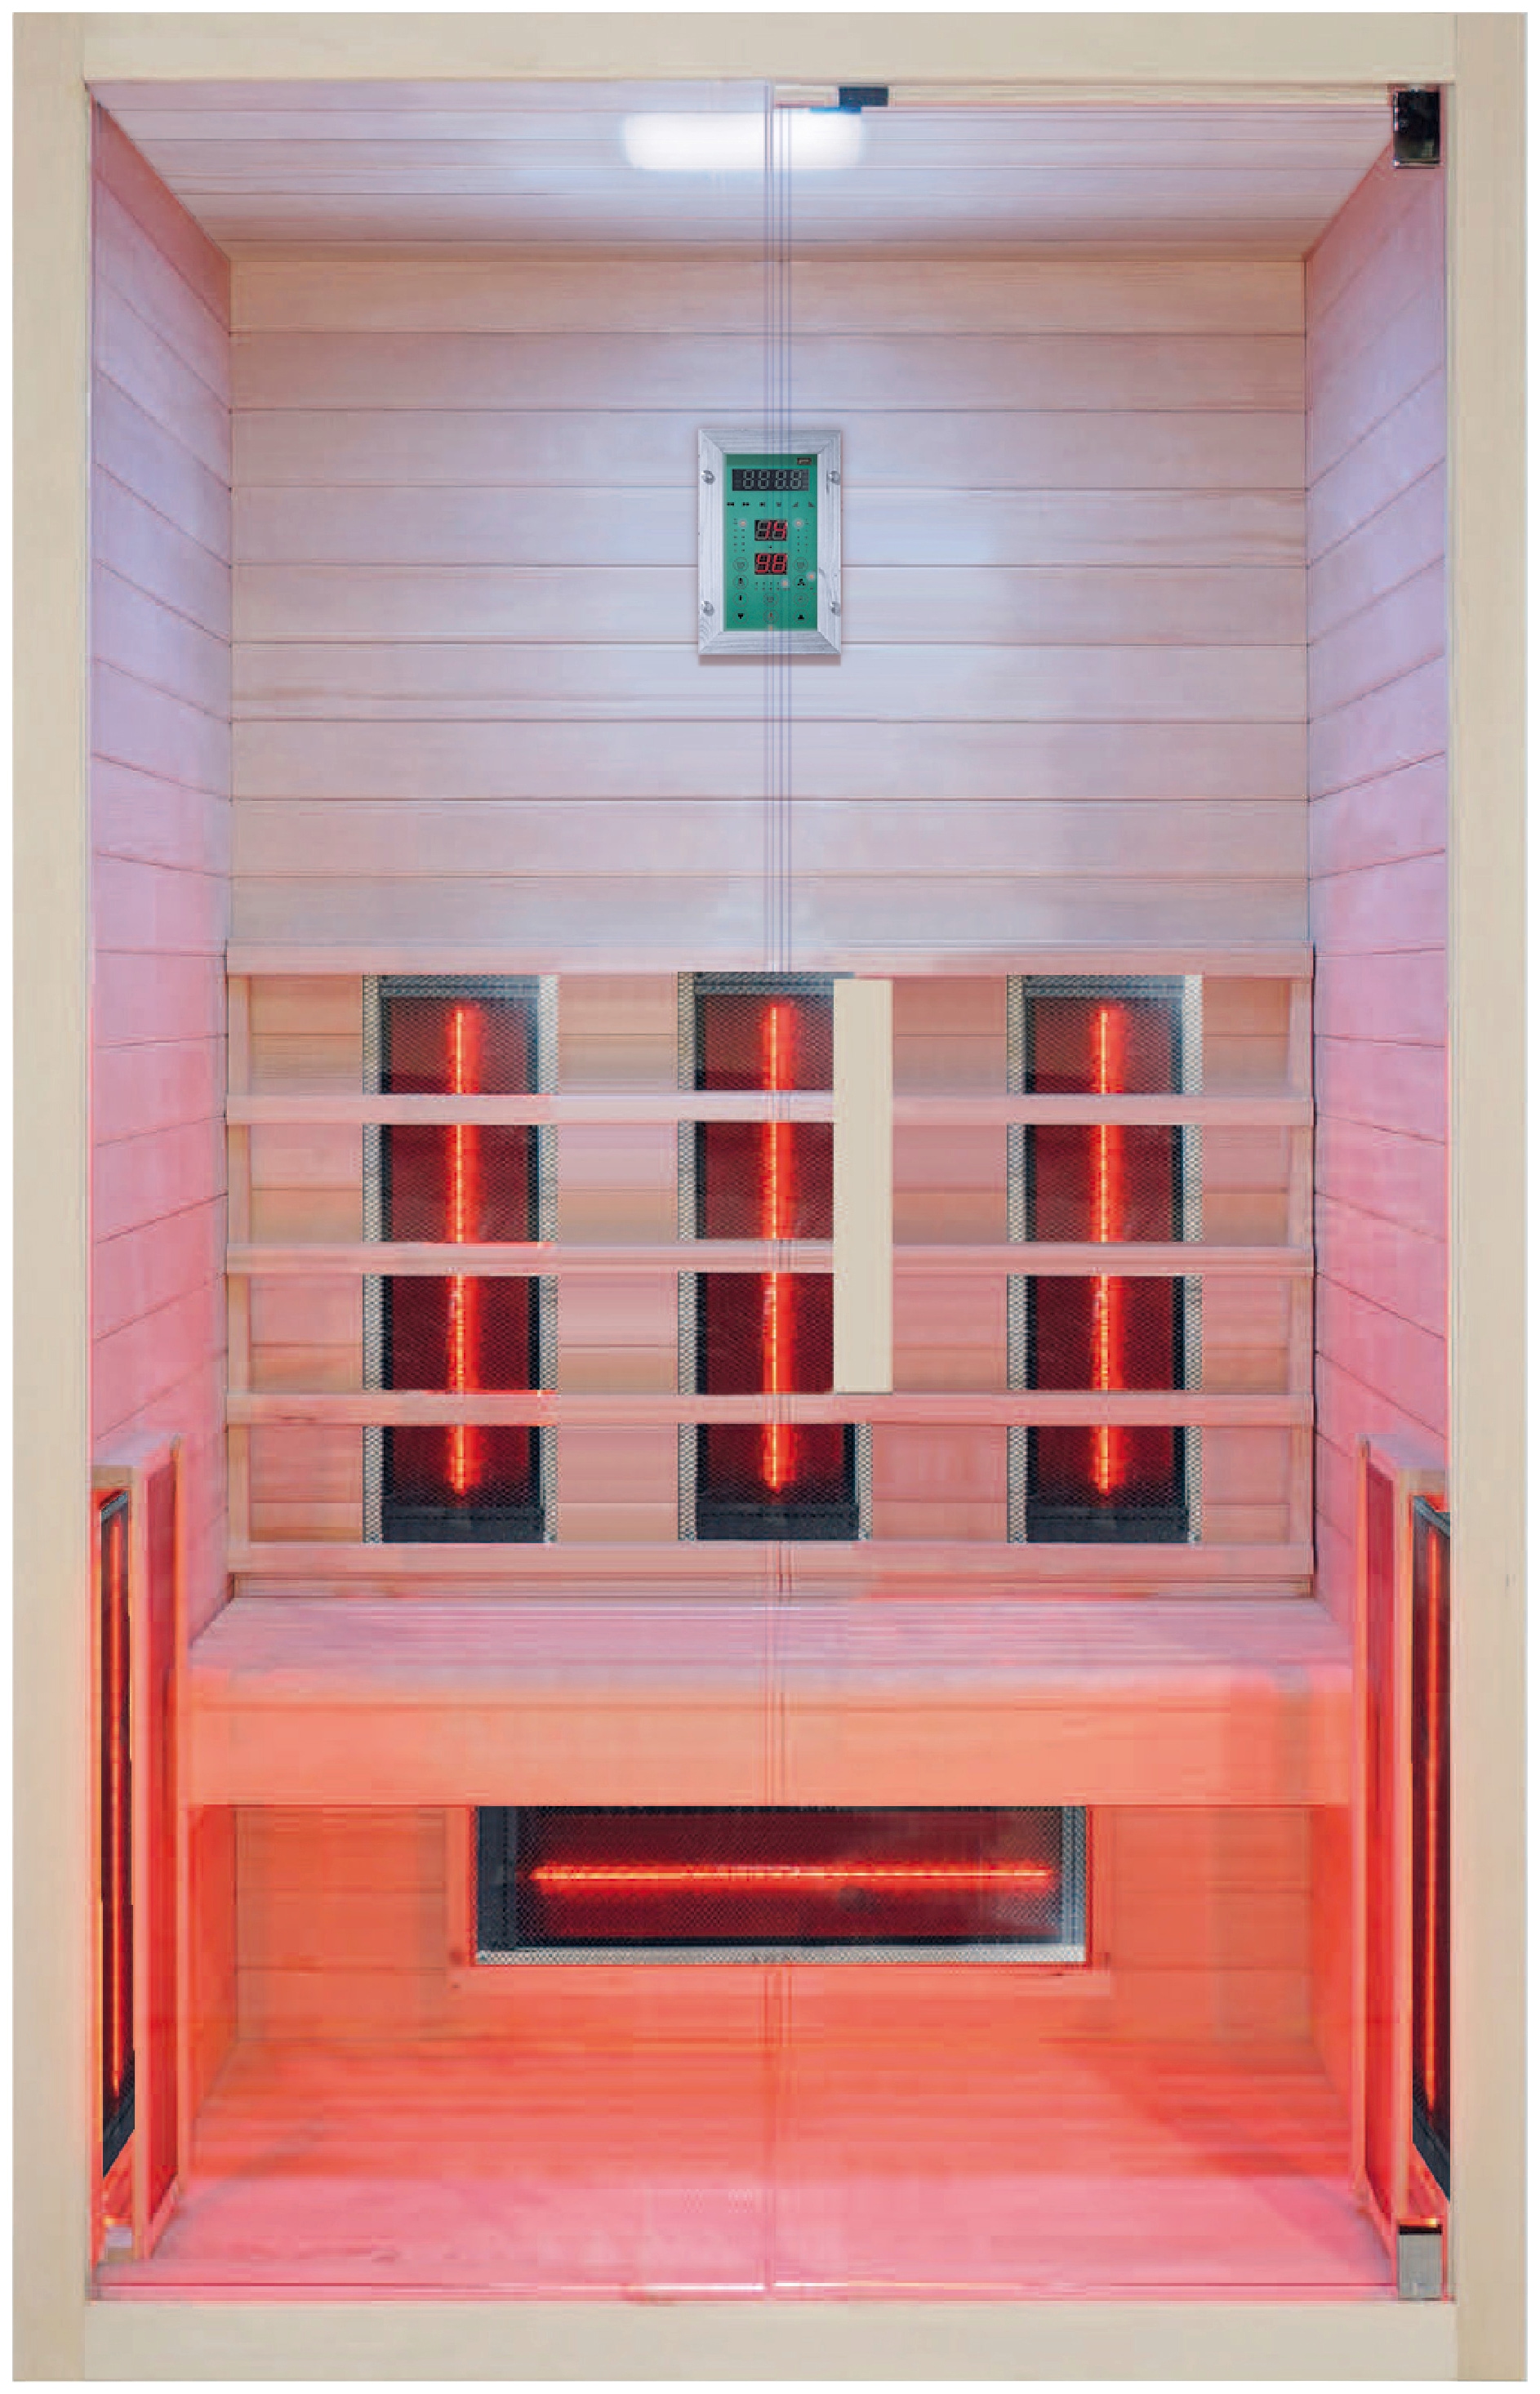 RORO Sauna & Spa Infrarotkabine "ABN Z432", Fronteinstieg, inkl Fußboden und Steuergerät